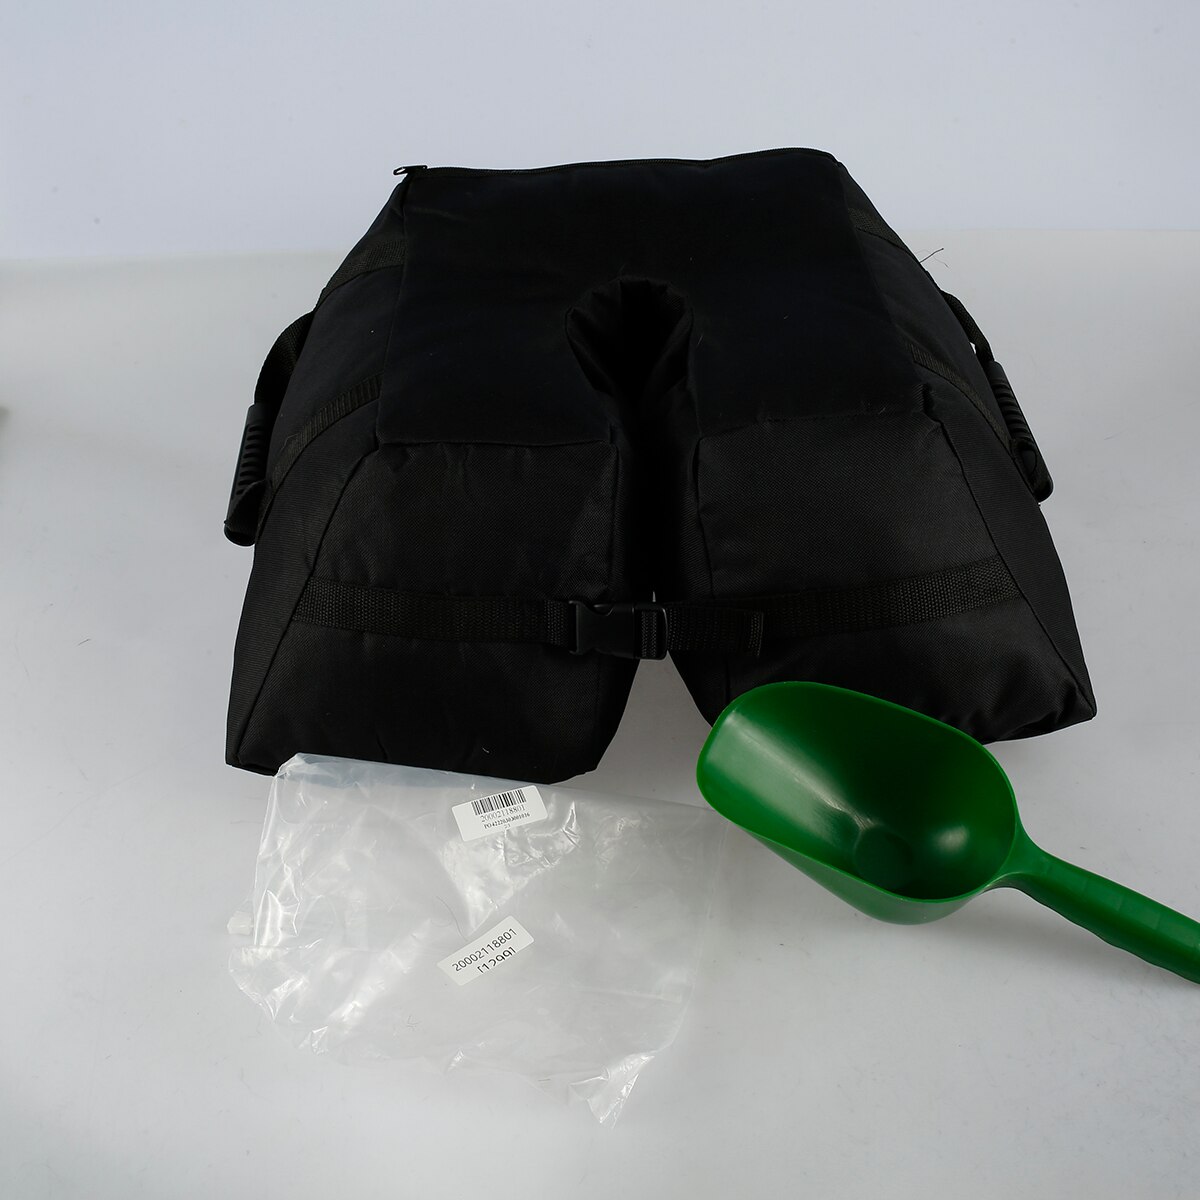 파티오 우산 기본 무게 가방 분리형 둥근 우산 기본 샌드백 찢어짐 방지 폴리 에스테르 깃대 고정 샌드백